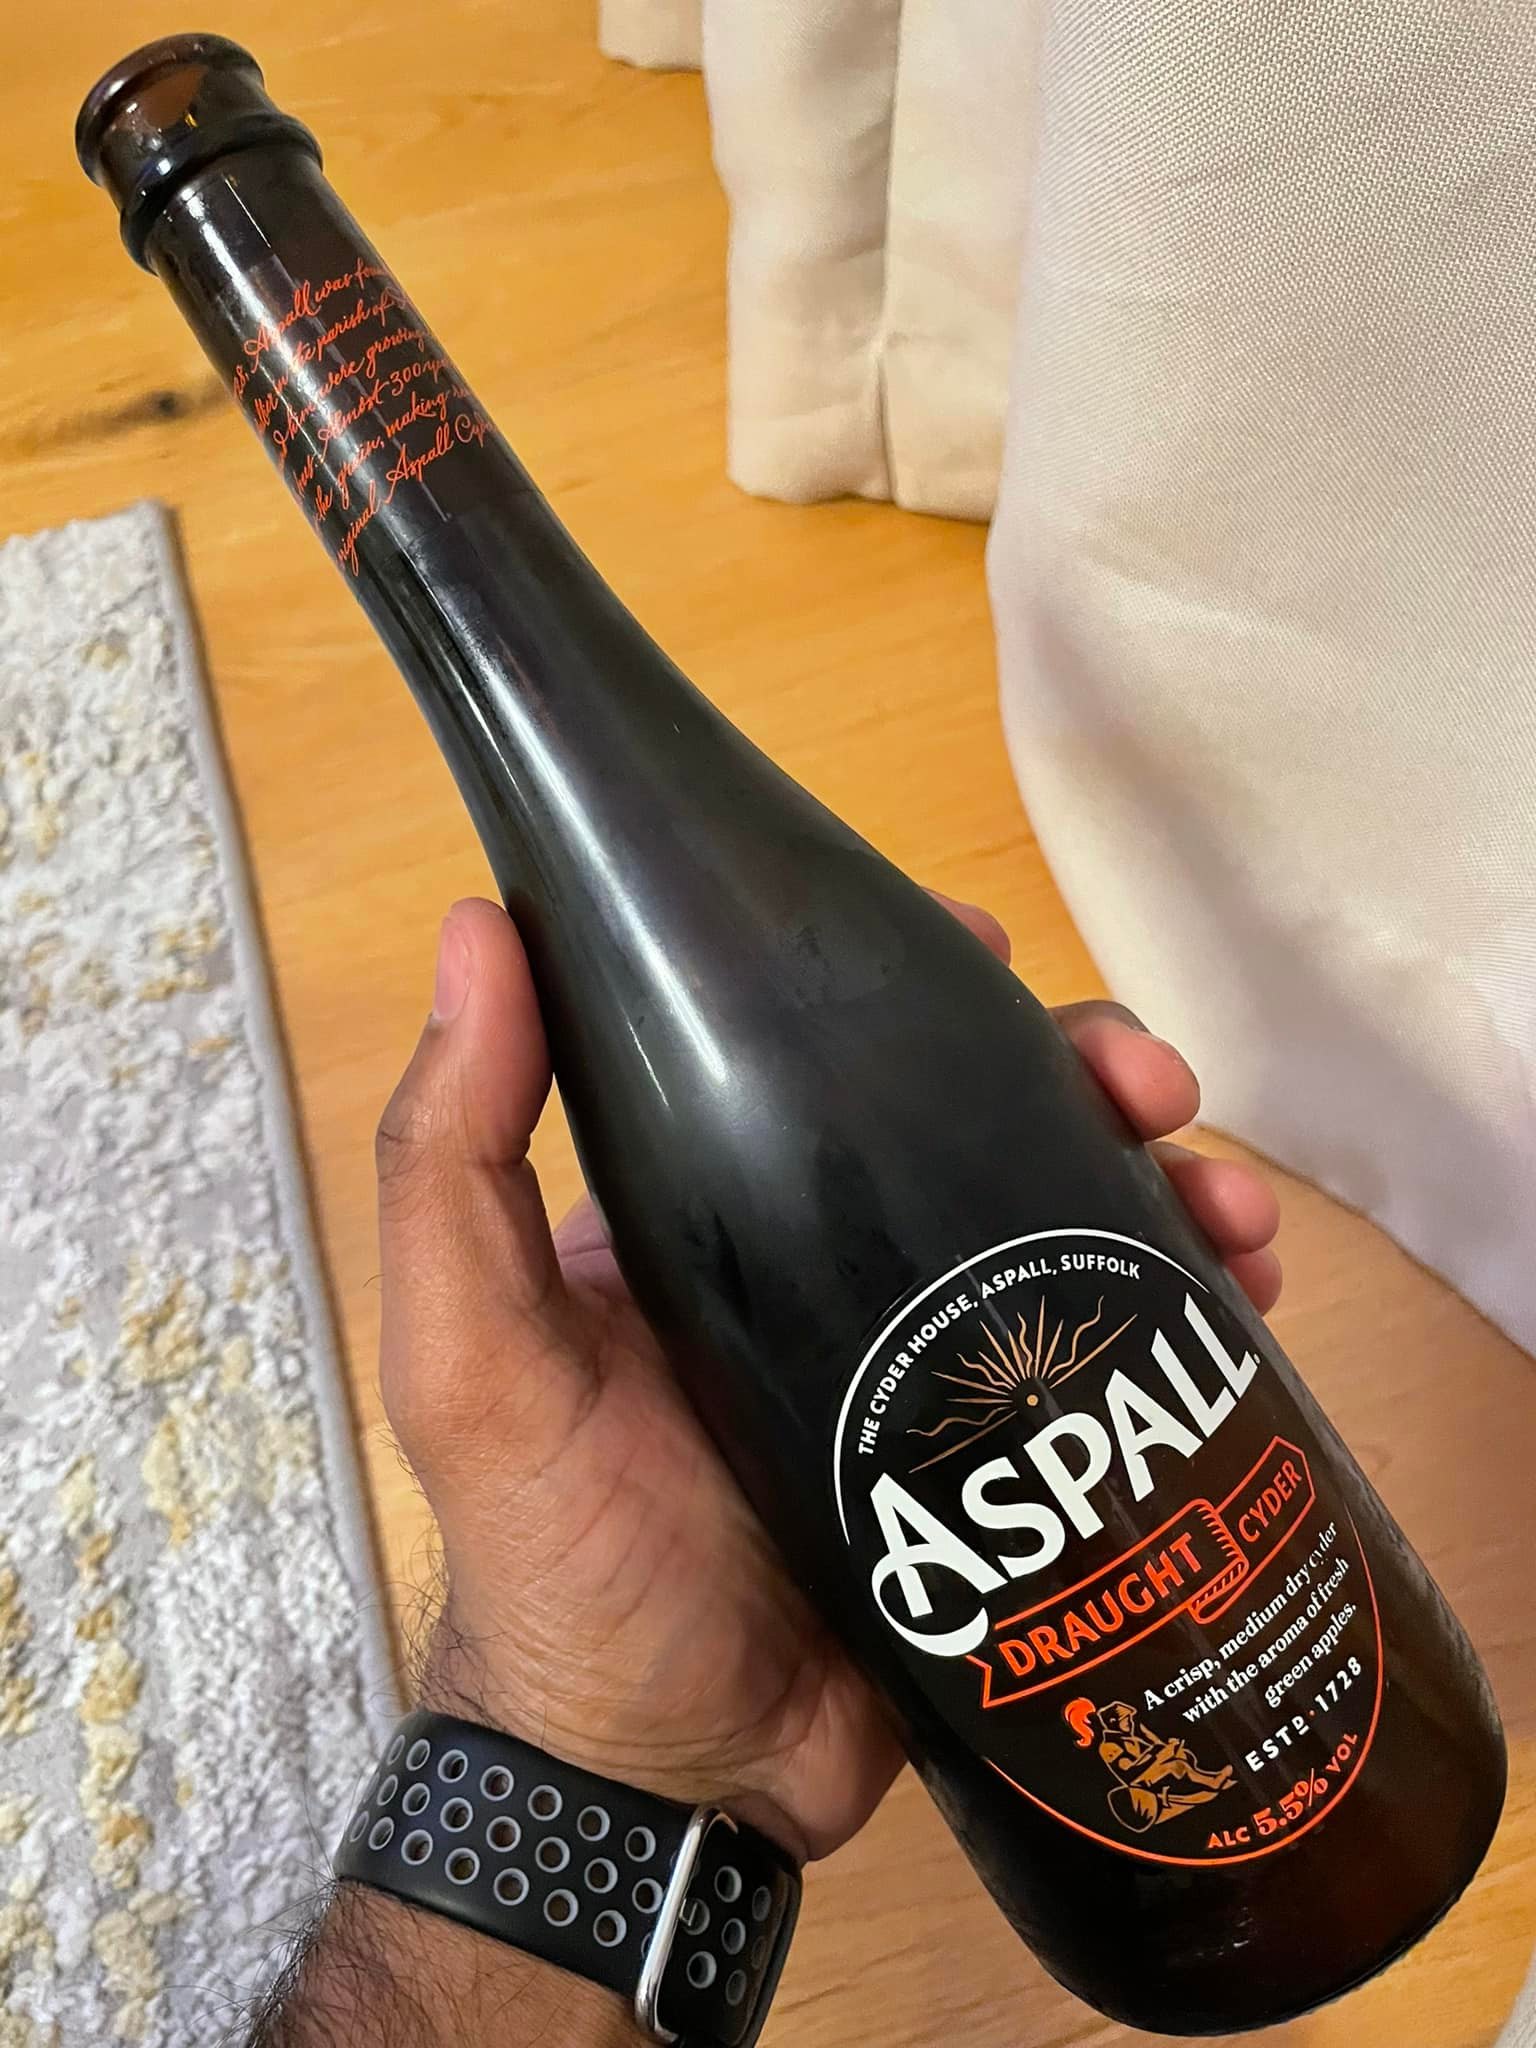 Aspall Draught Cider
